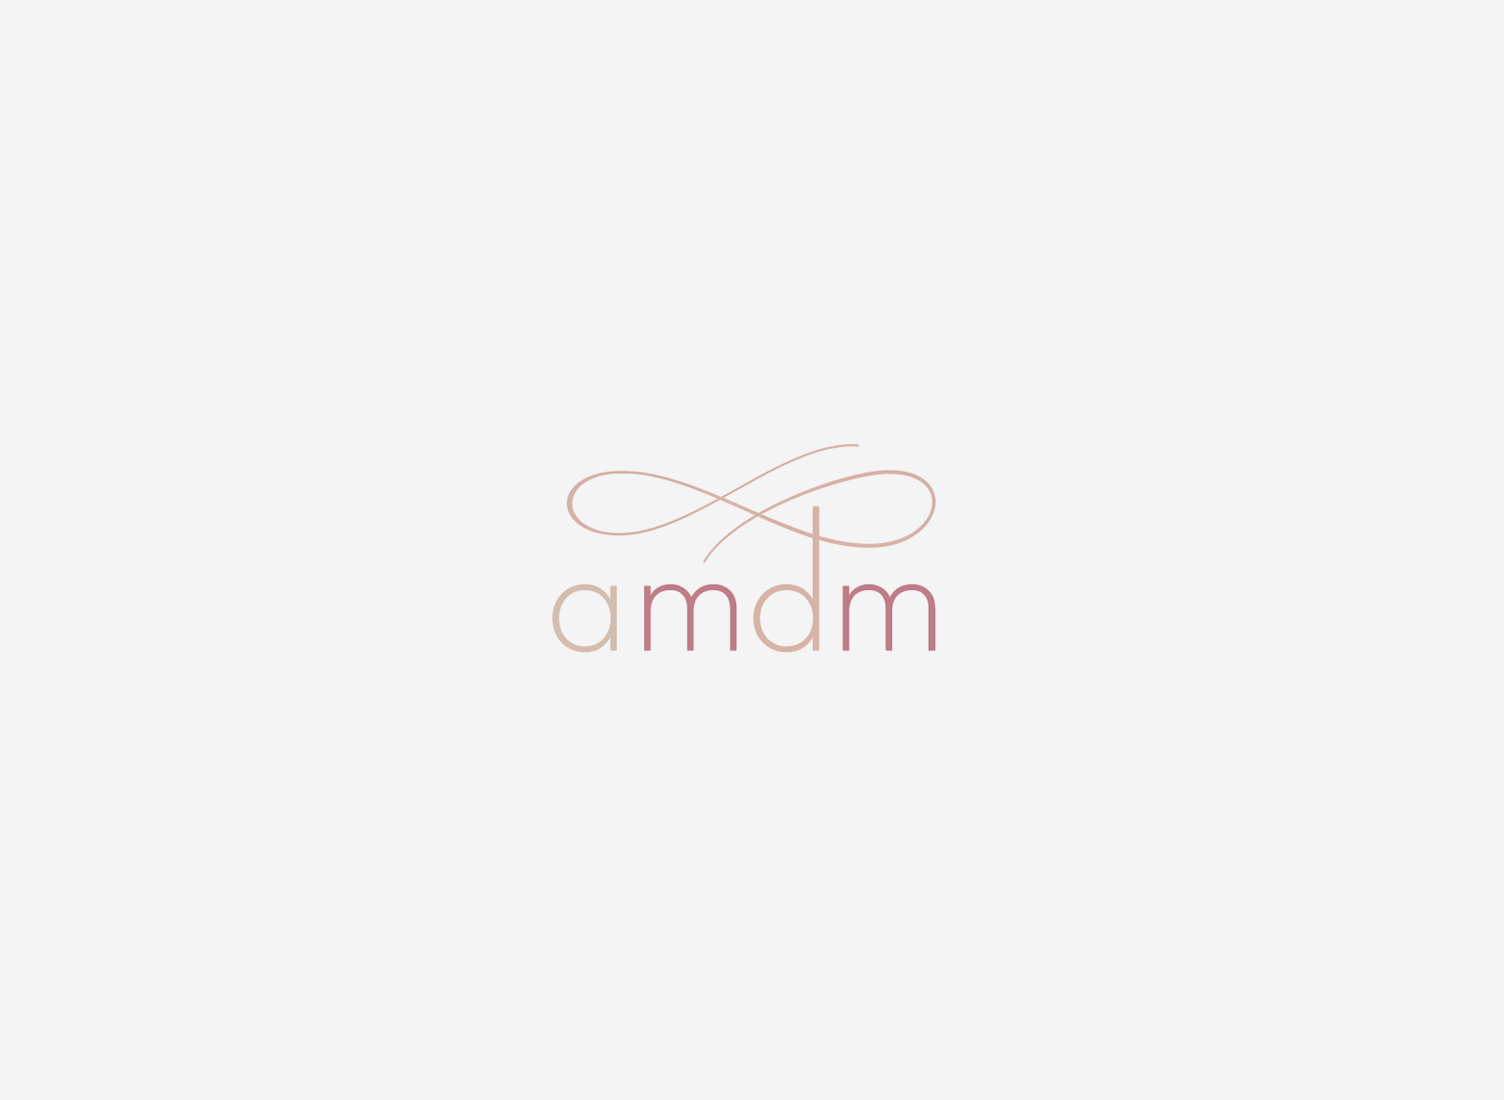 Diseño de logotipo amdm para amadamadrina